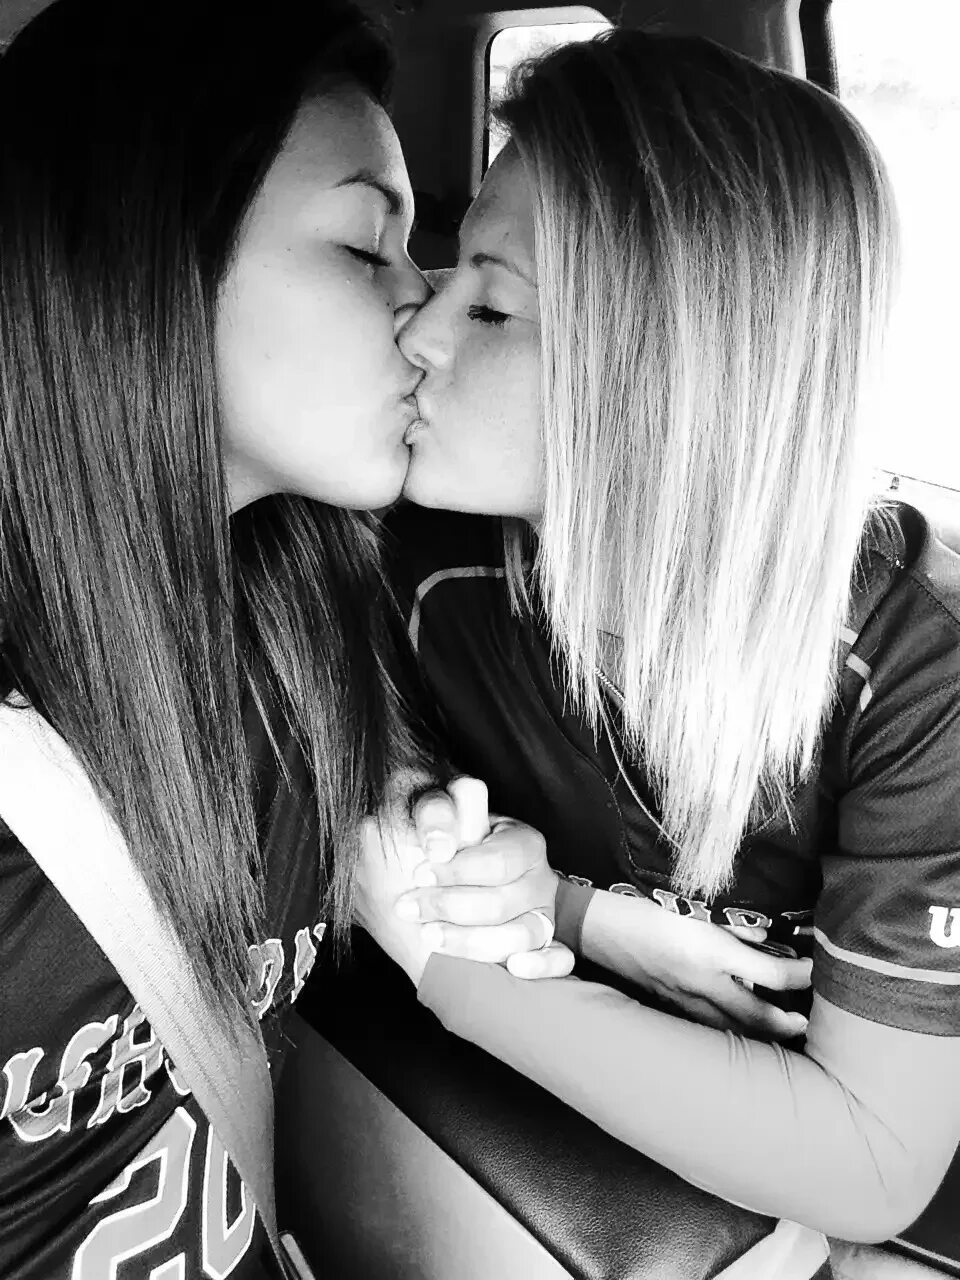 Lesbian 12. Две девушки целуются. Красивый поцелуй девушек. Поцелуй девушки с девушкой. Подруги.